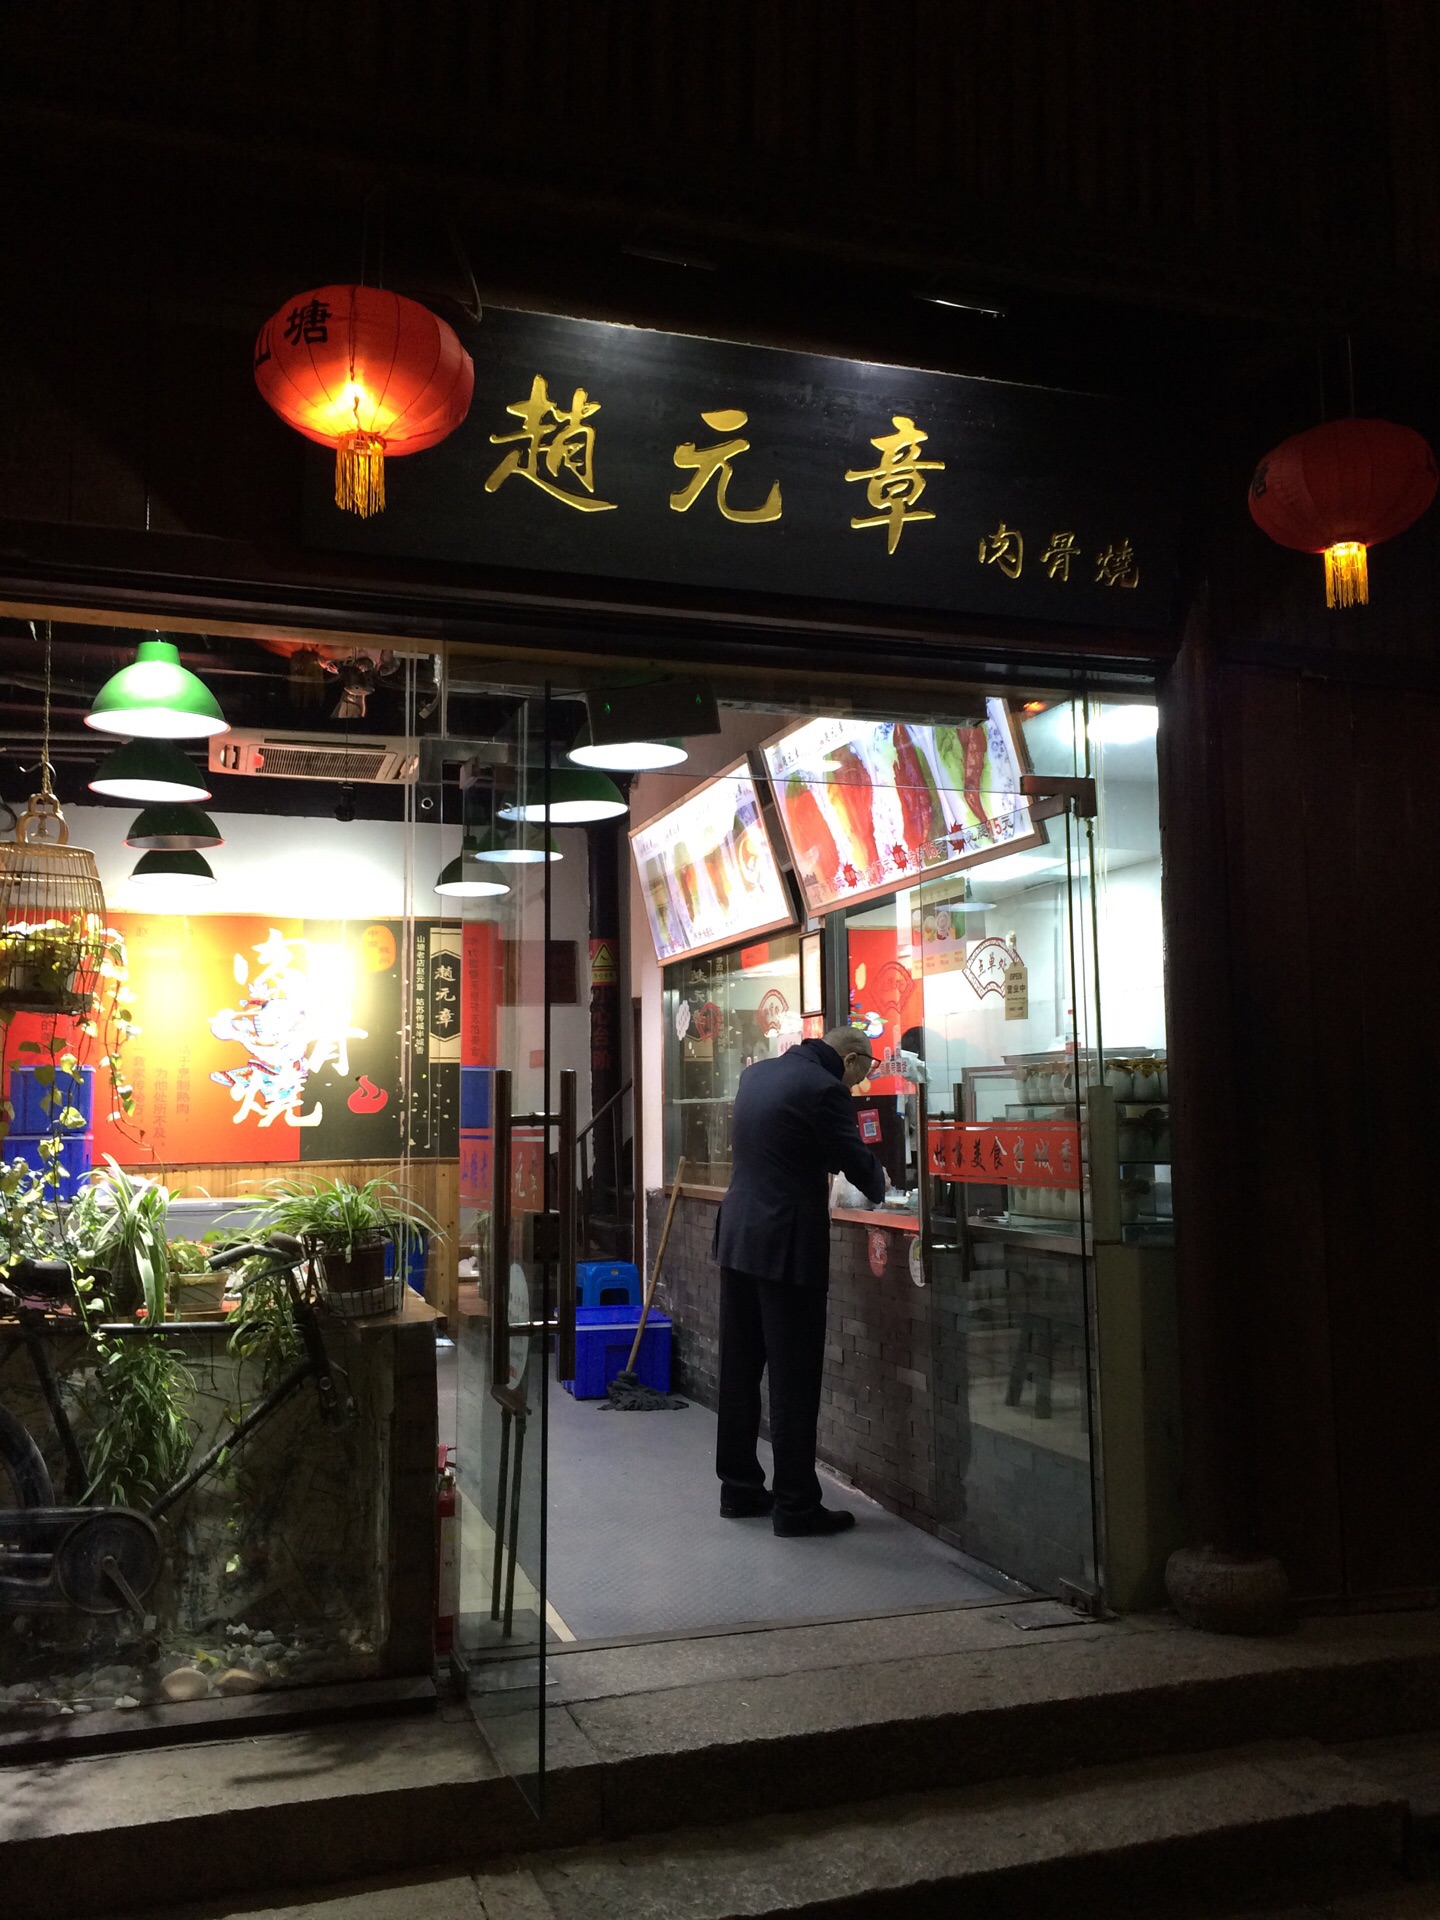 2023赵元章肉骨烧(山塘街店)美食餐厅,苏州山塘街上一家不得不去吃...【去哪儿攻略】